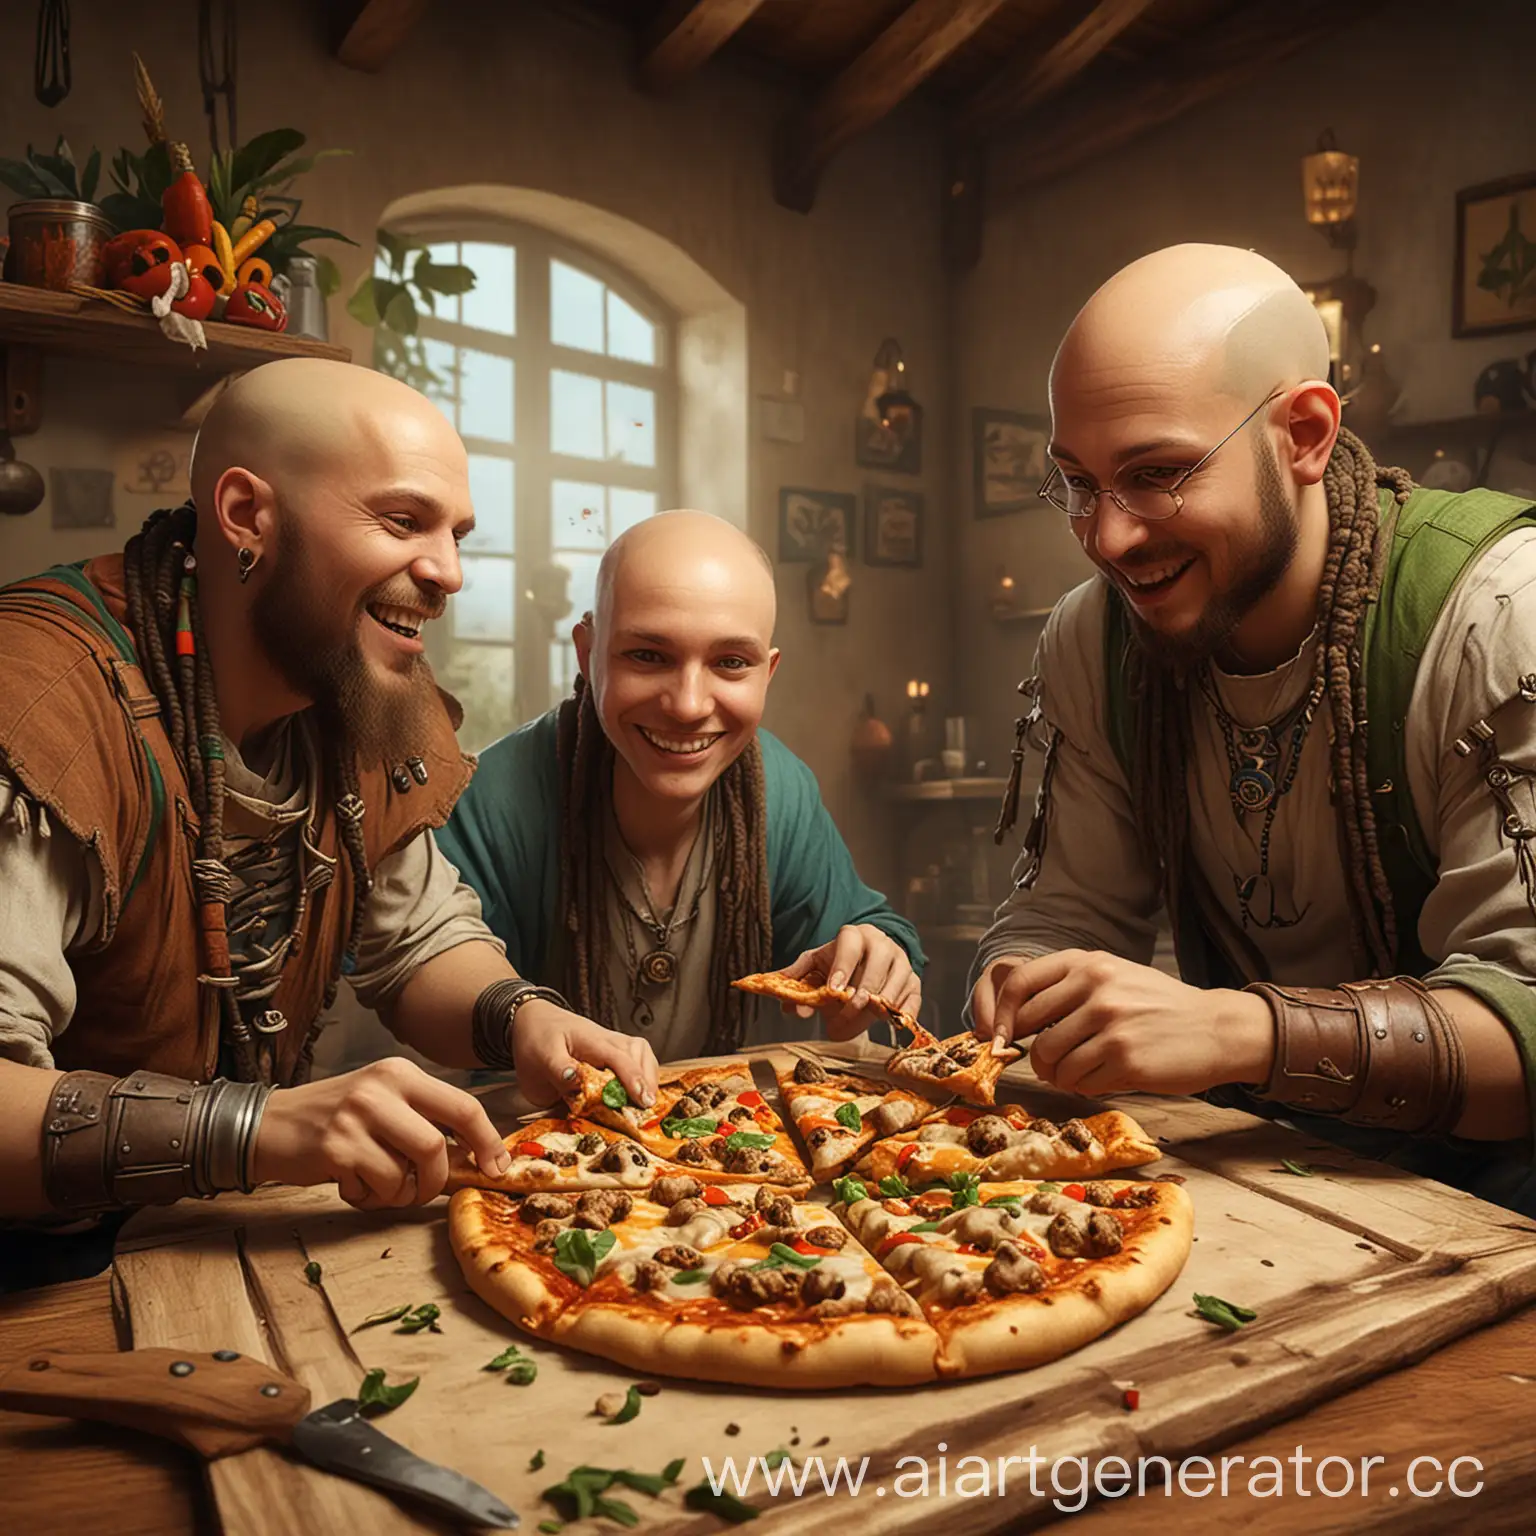 три человека - скуф, программист и лысый спортсмен играют в гостях у растамана в игру trine и веселятся едят пиццу